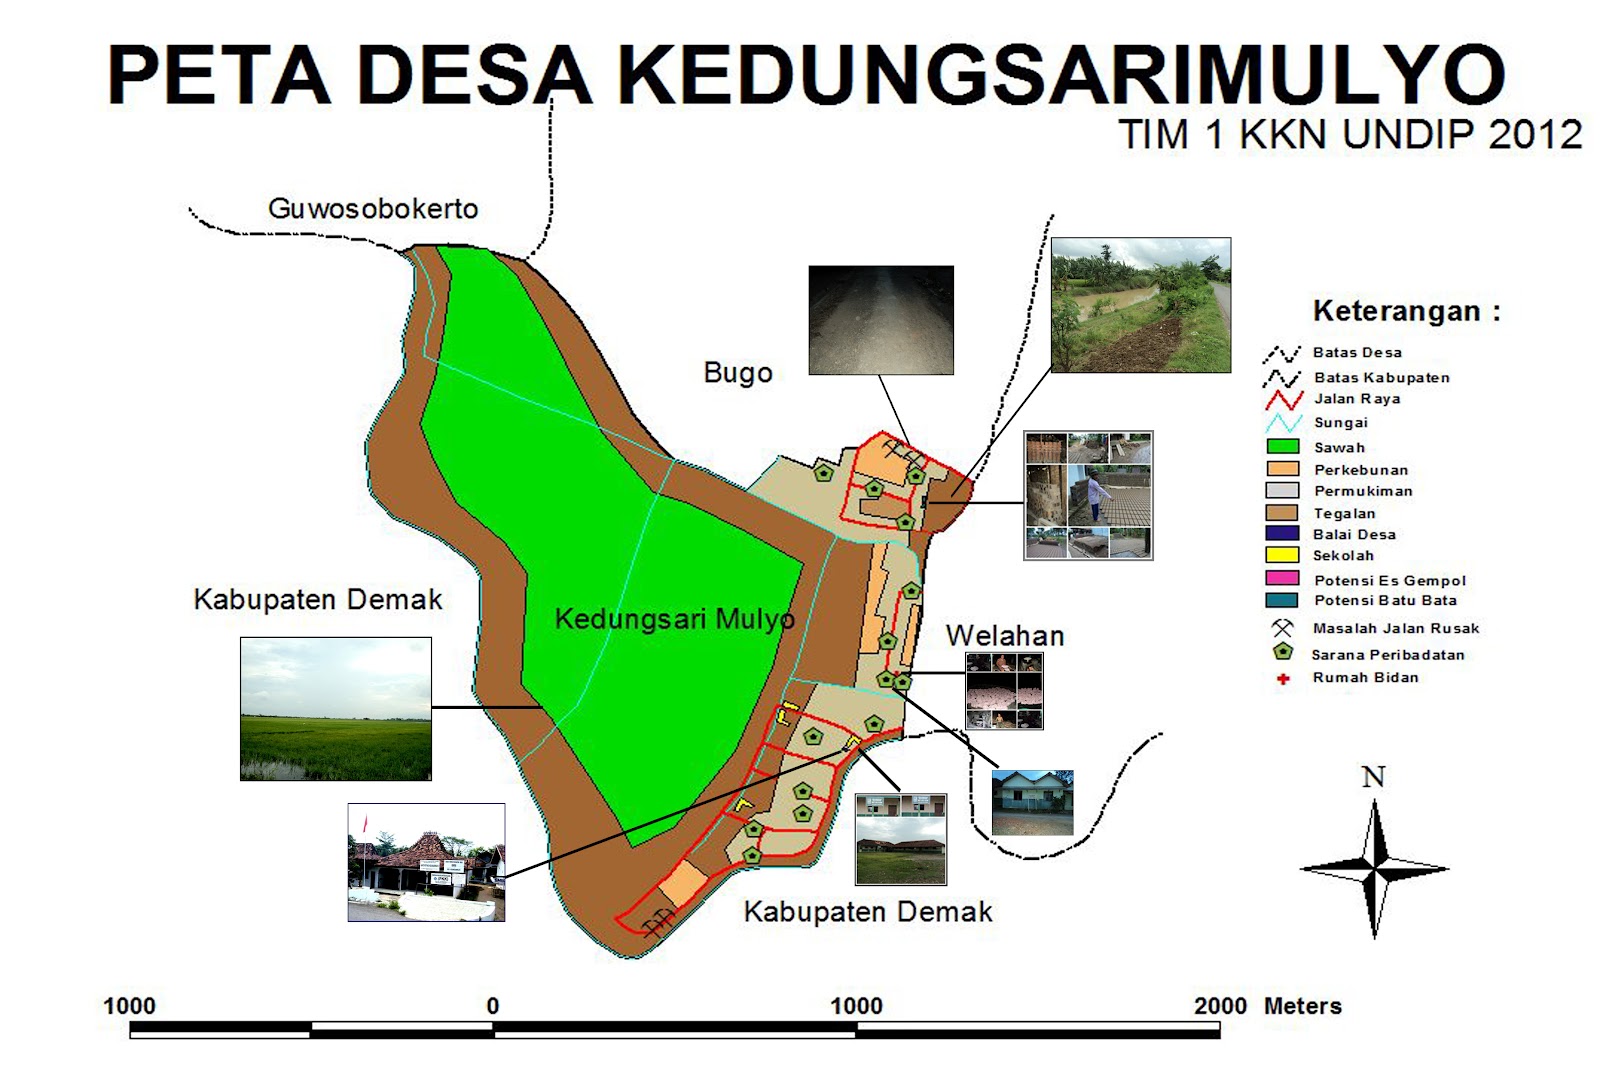 Peta Desa Kedungsarimulyo